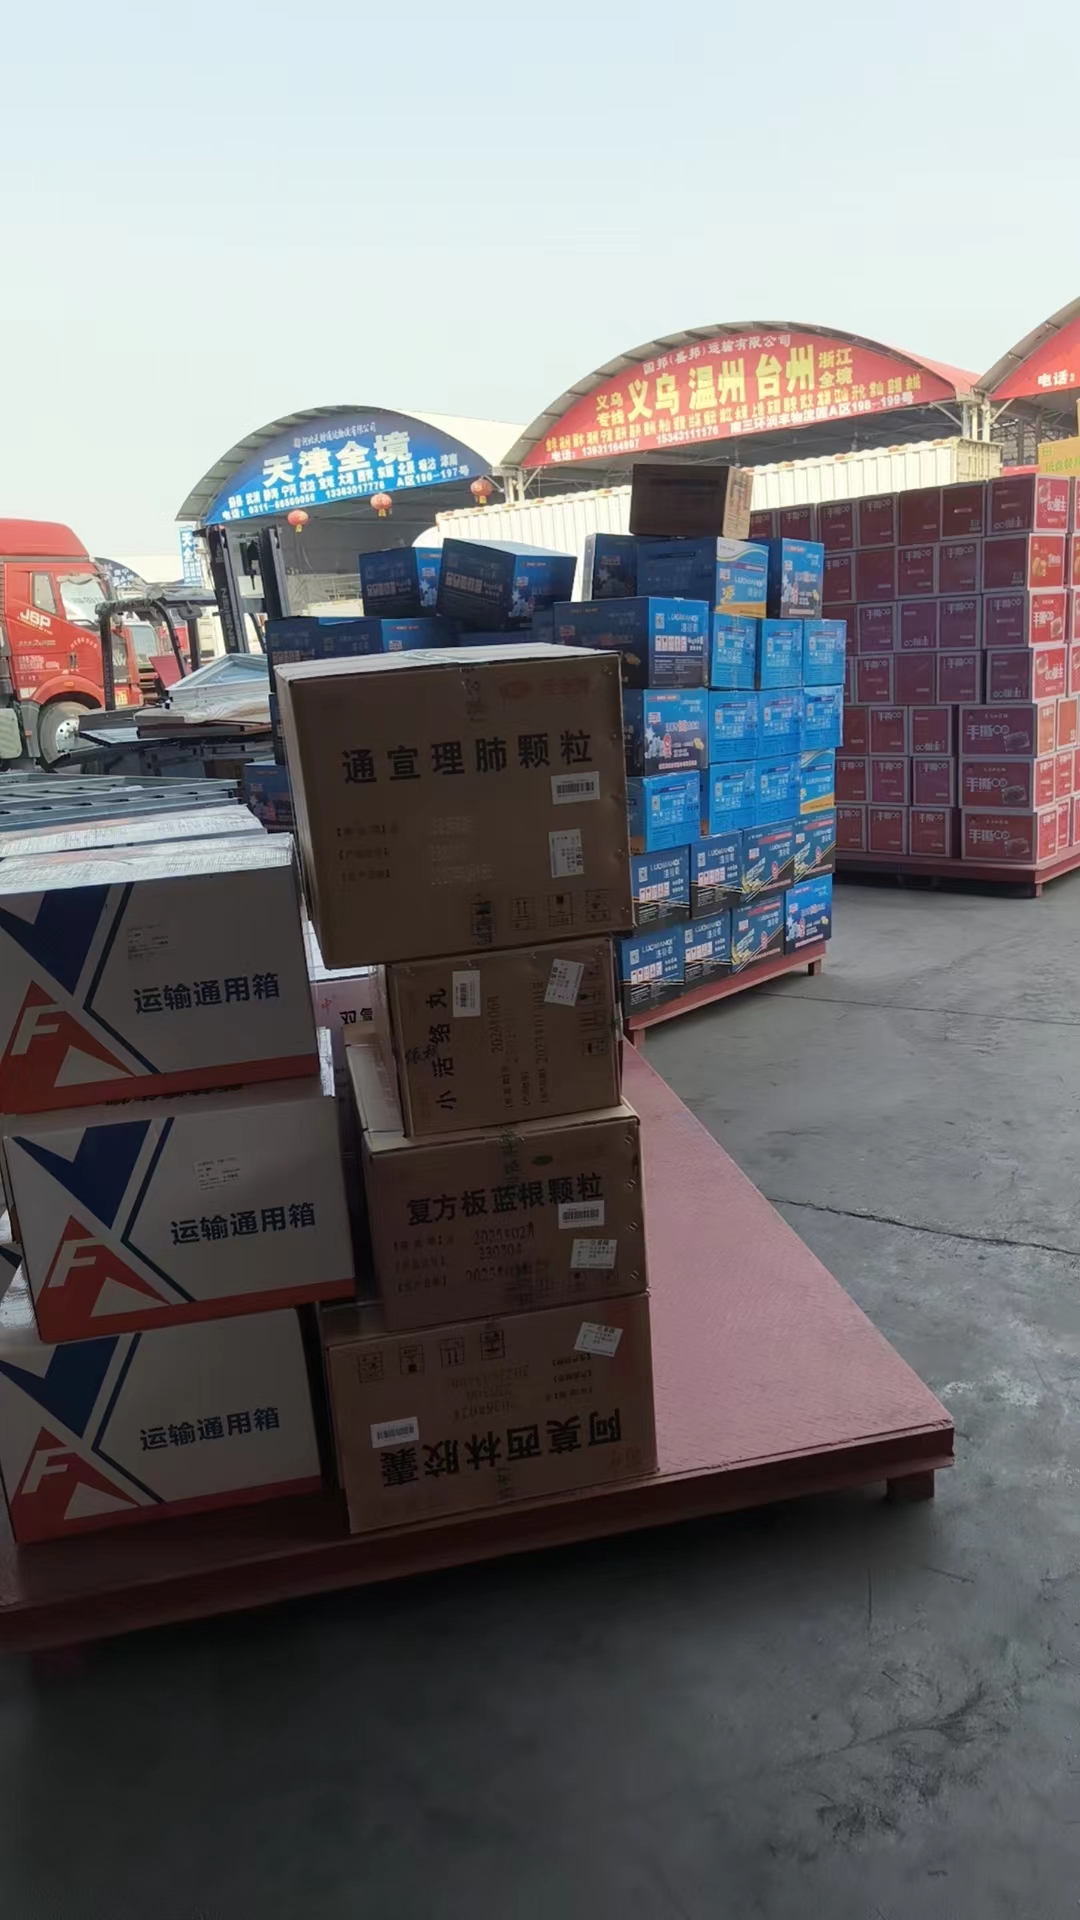 天津东丽区至成都危险品专线  长短途搬家 整车零担  冷藏品货运全国各地  天津到成都大件物流